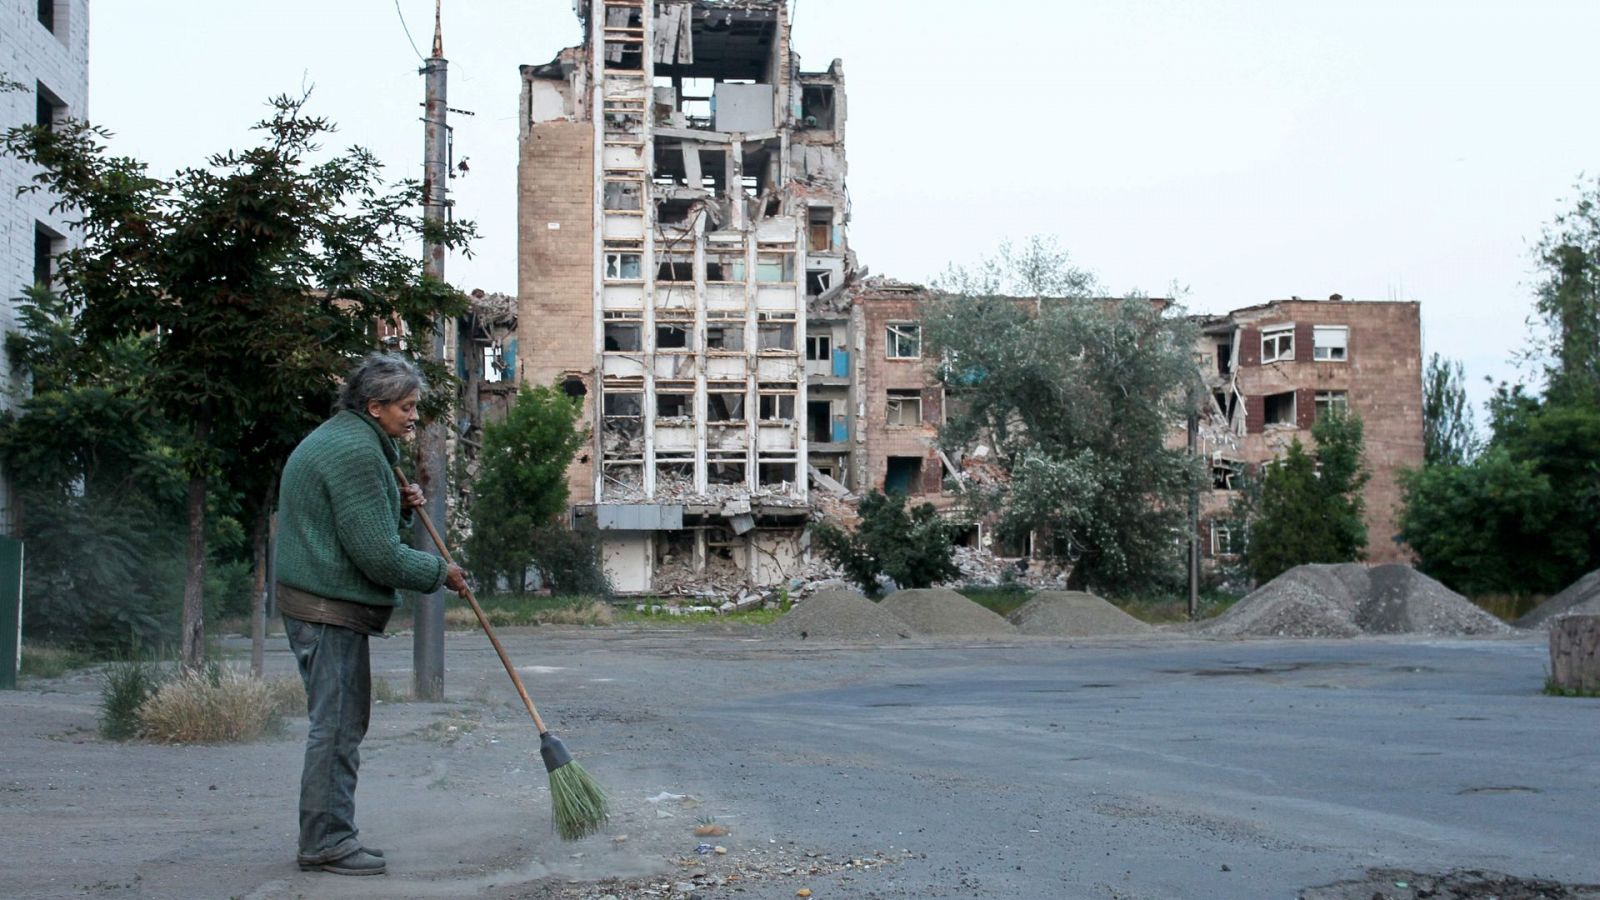 Avanza la contraofensiva de Ucrania: las fuerzas ucranianas han liberado dos aldeas en la región de Donetsk - Ver ahora